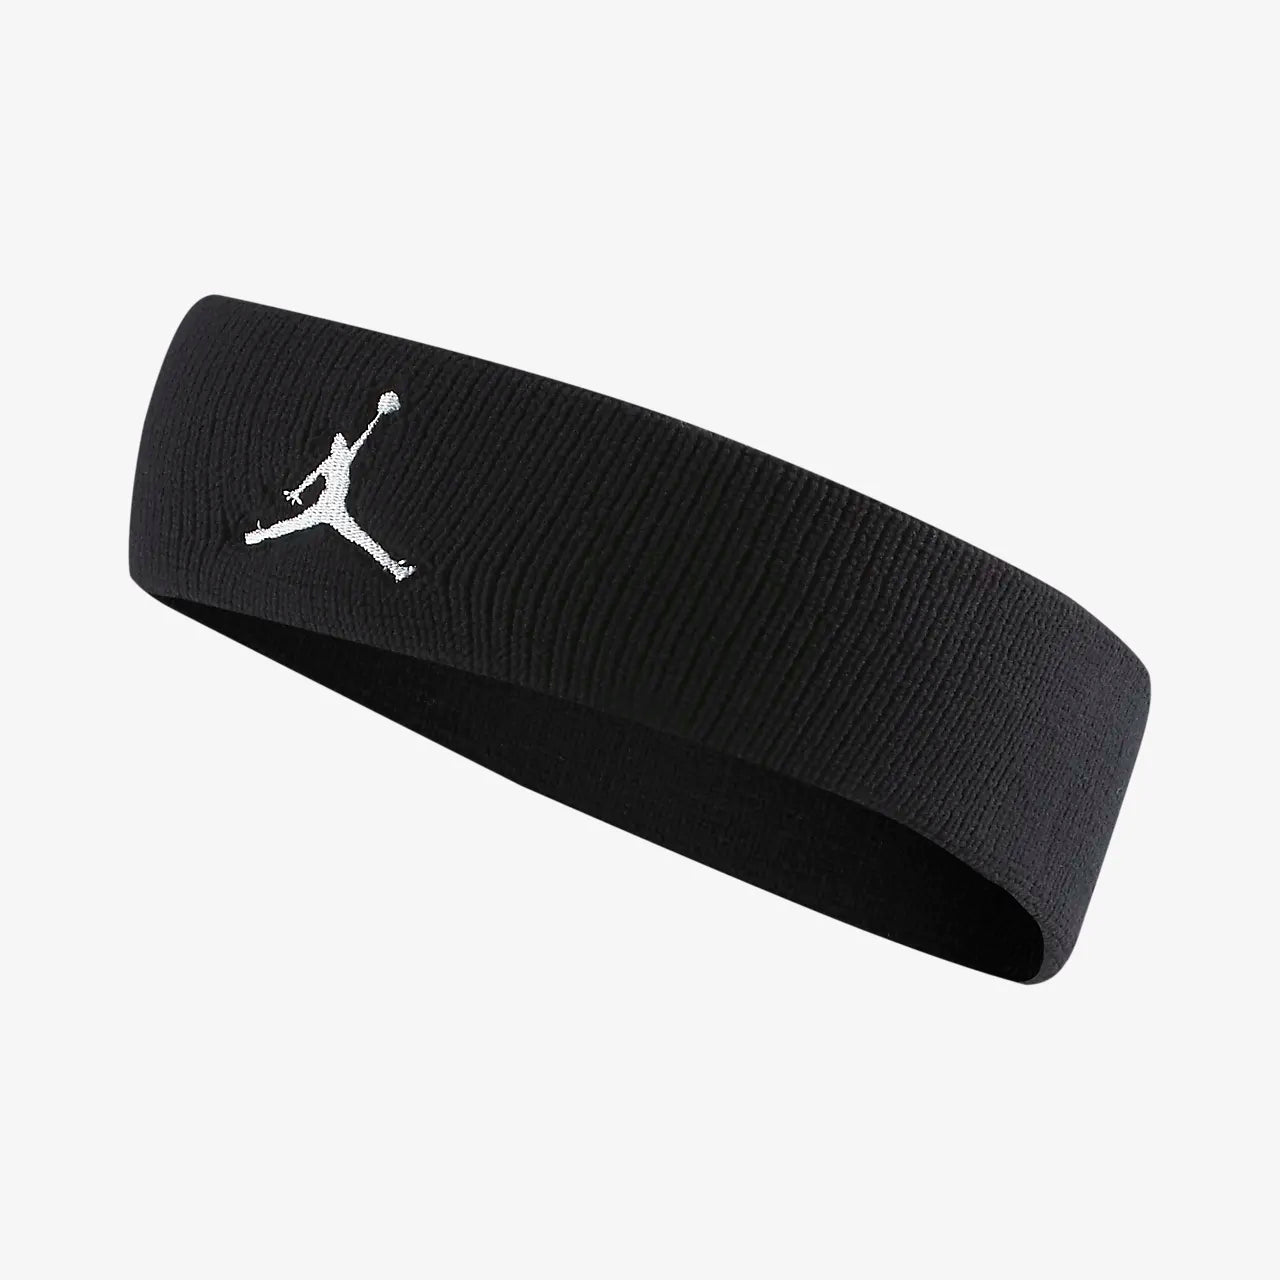 Banda Nike Headband Jordan Jumpman